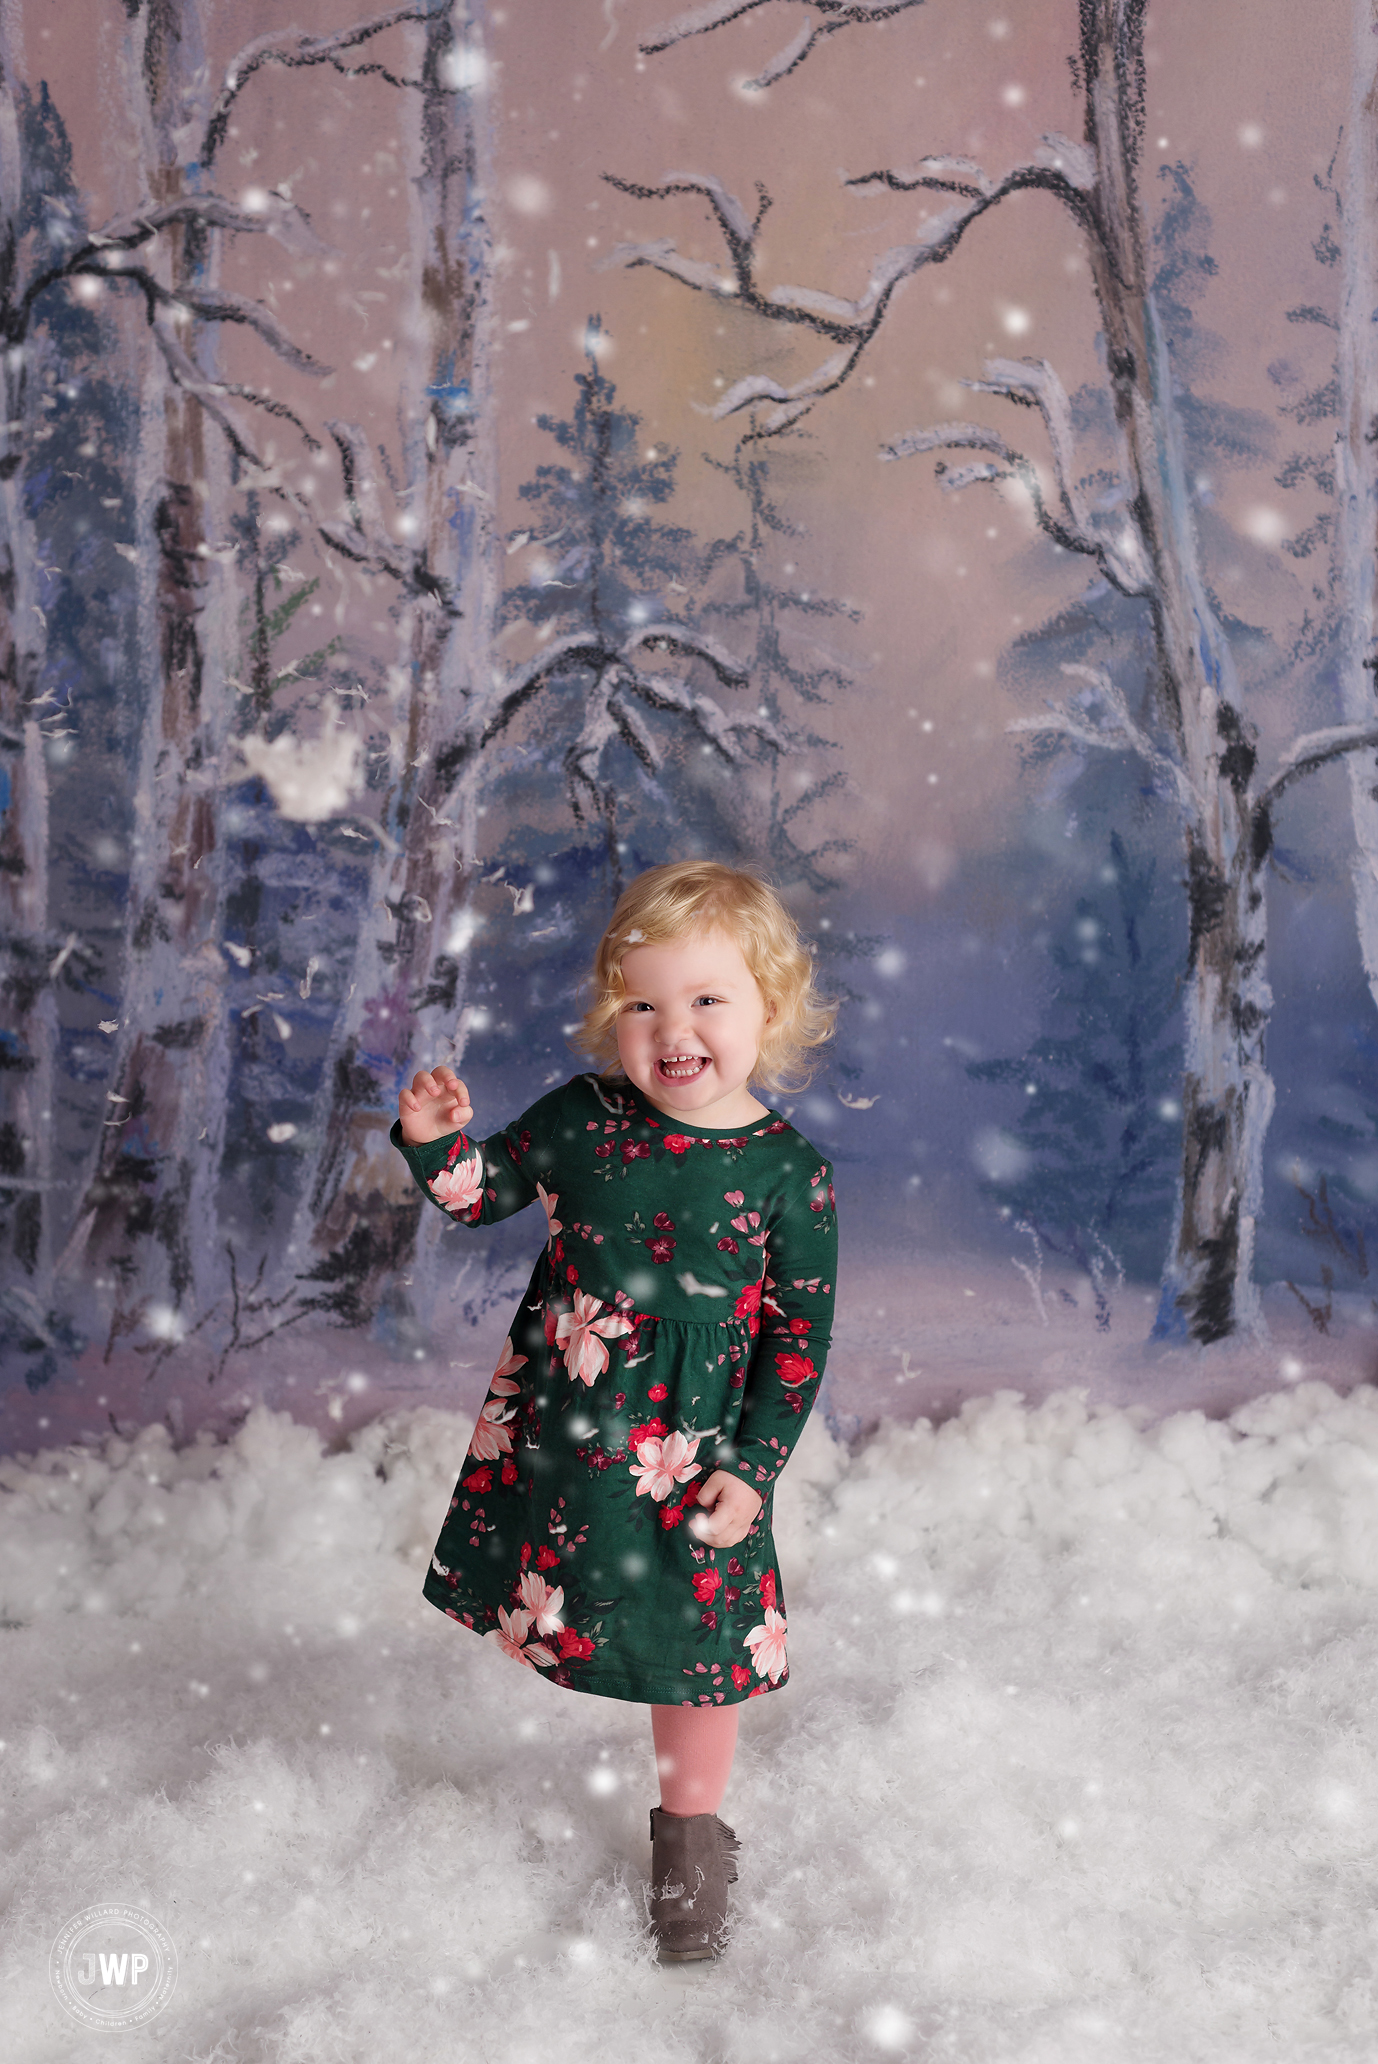 little girl green dress Winter scene falling snow Kingston mini session photography